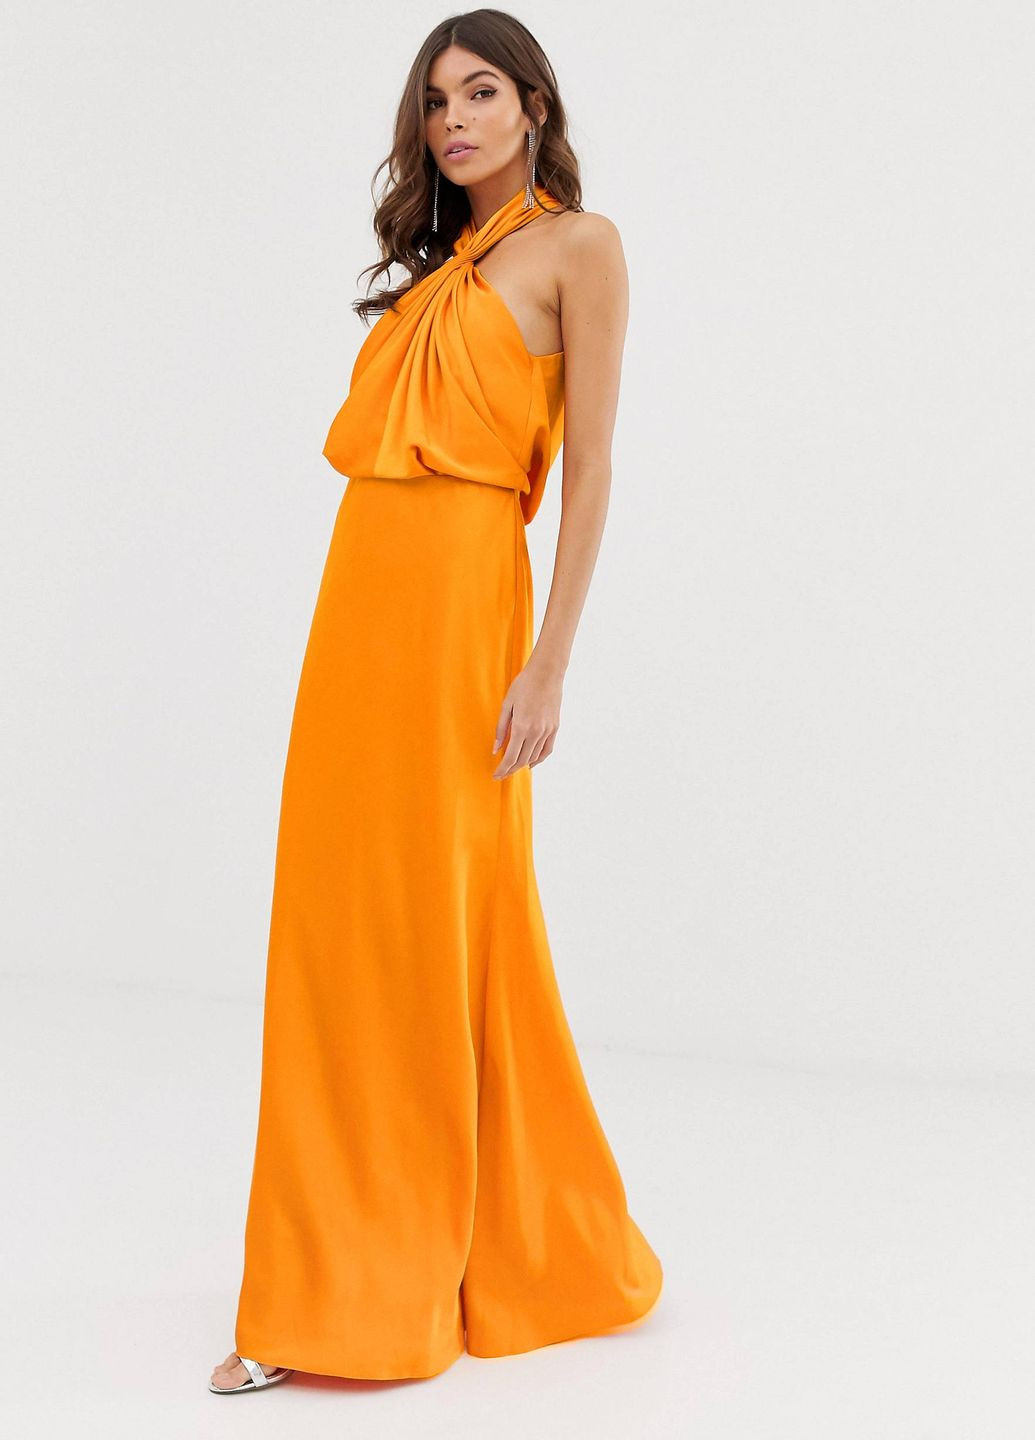 Светло-оранжевое платье макси edition со сборками и вырезом на шее Asos